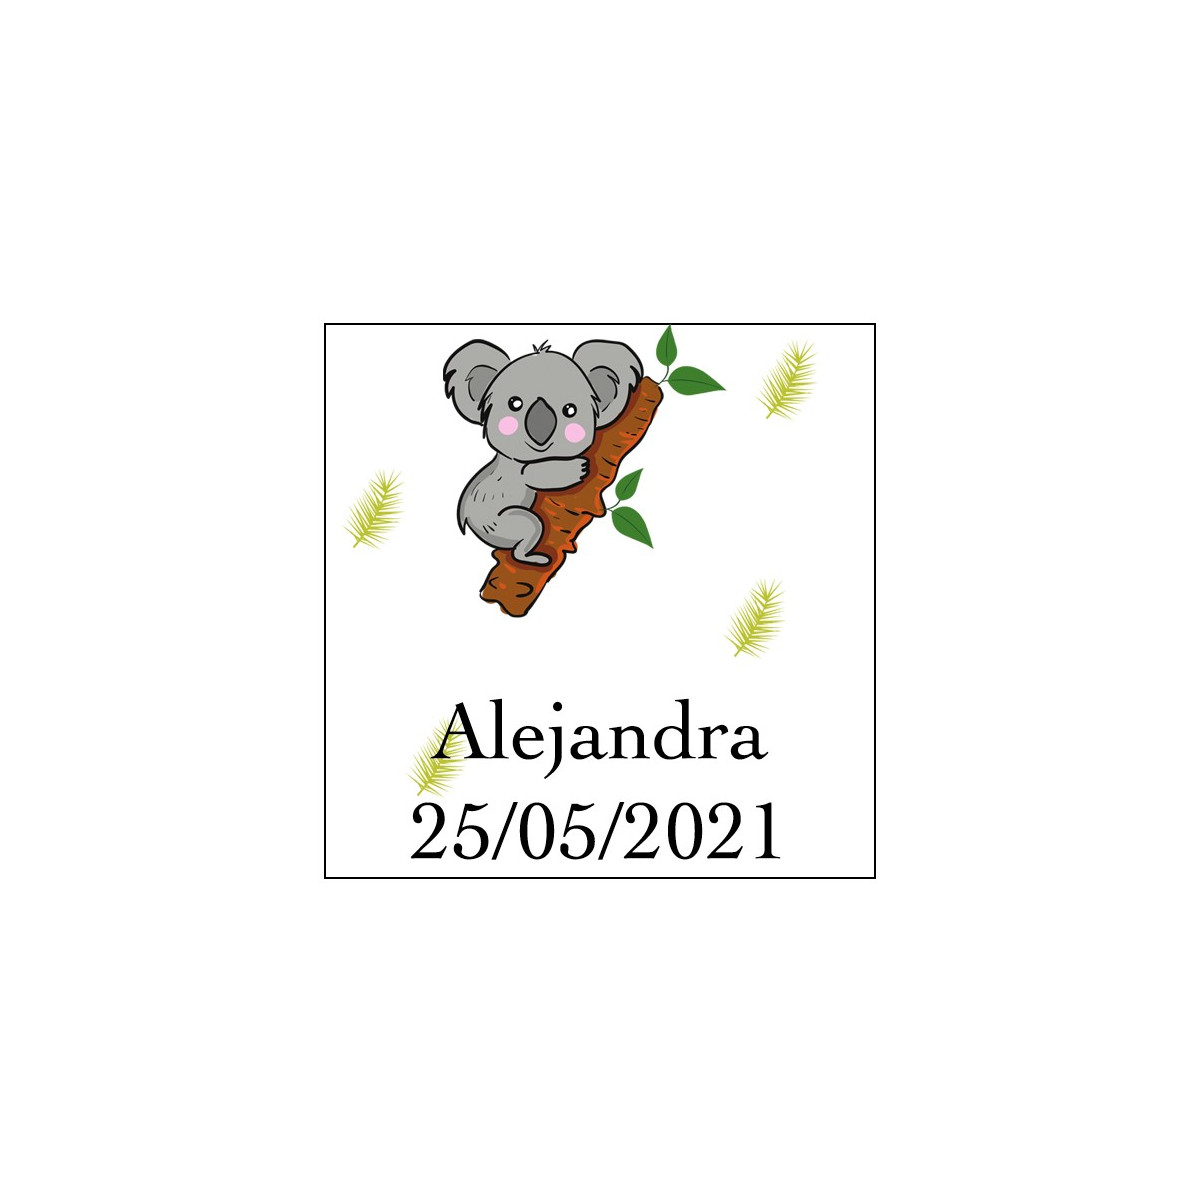 Adesivo de coala quadrado para personalizar com nome e data